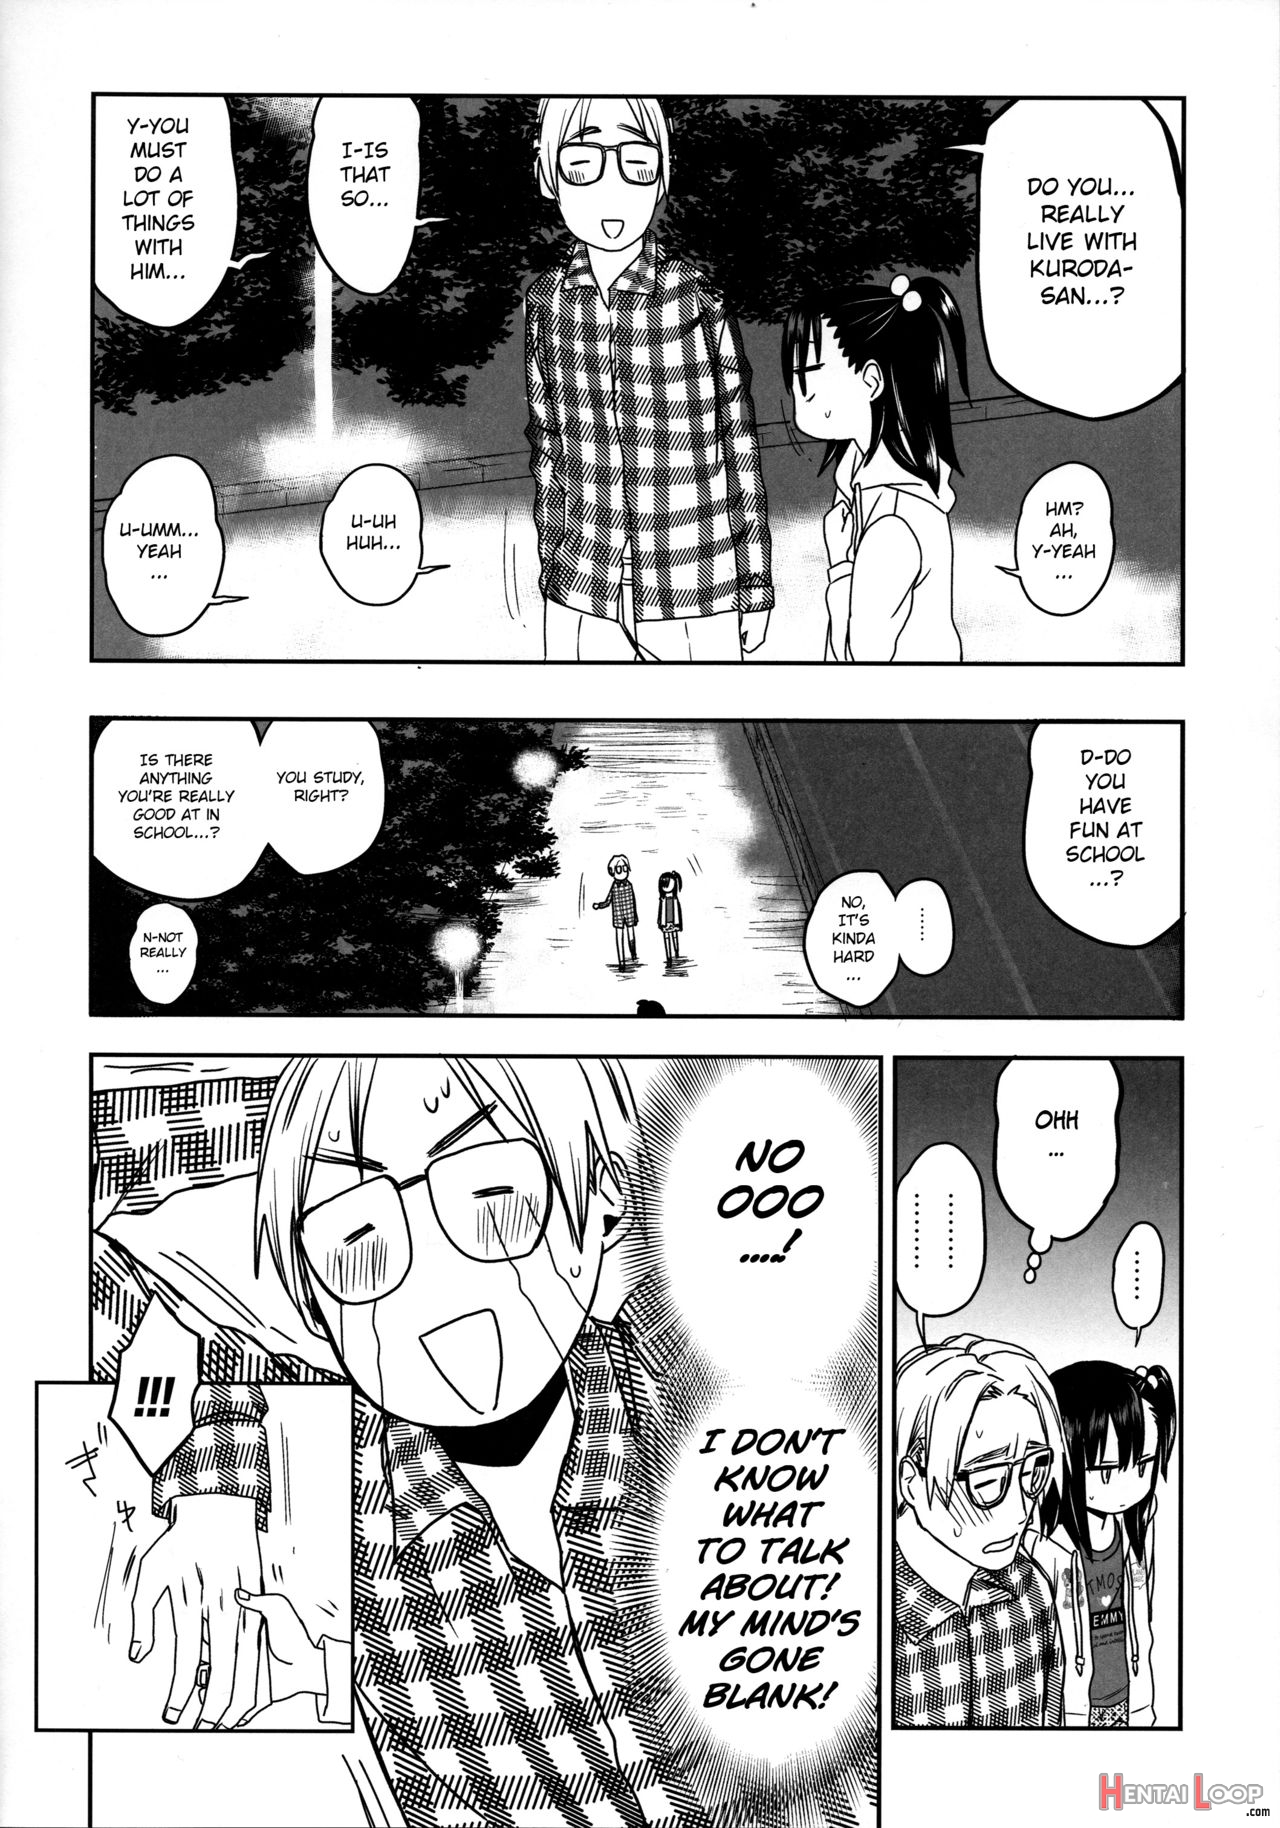 Tonari No Mako-chan Season 2 Vol. 2 page 12